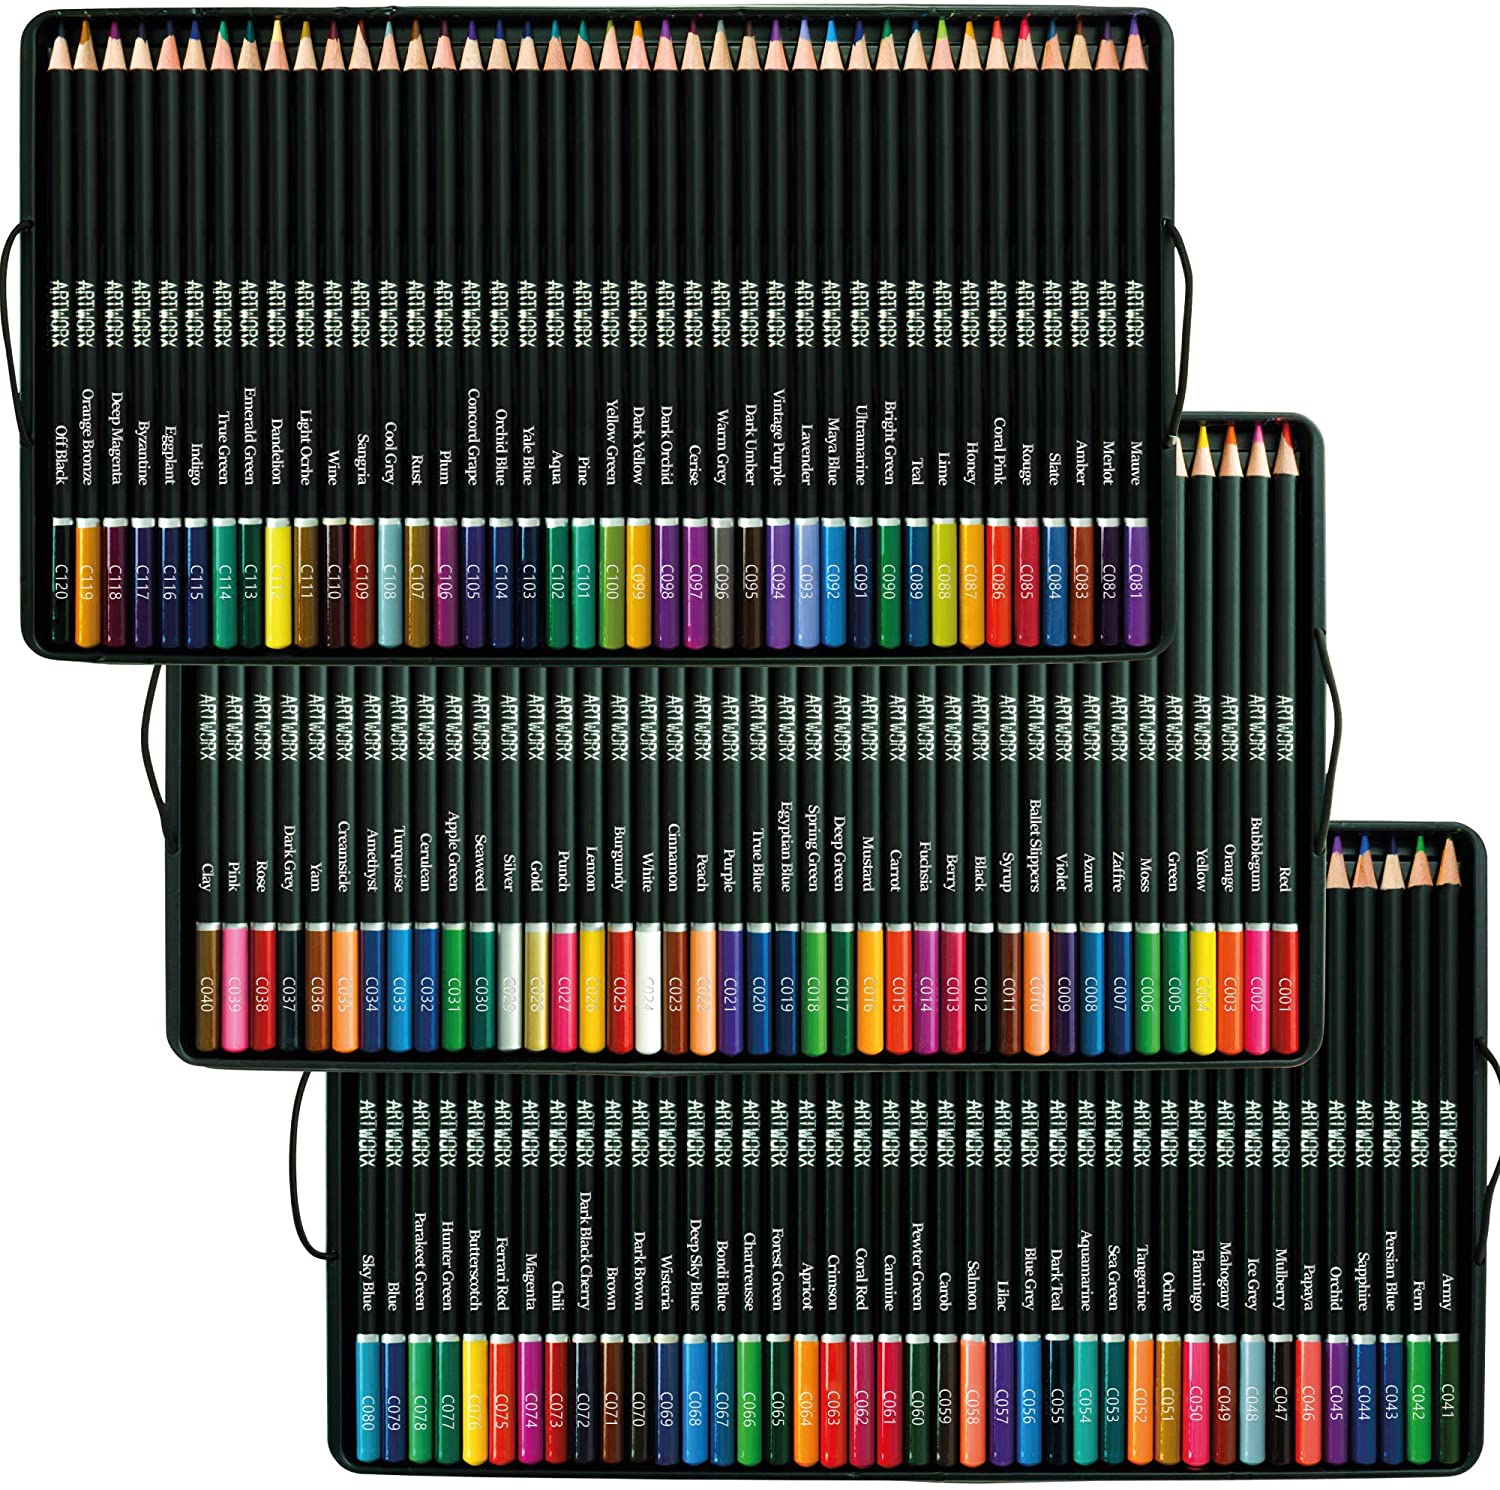 Artworx Premium Artists Colouring Art Pencils front view